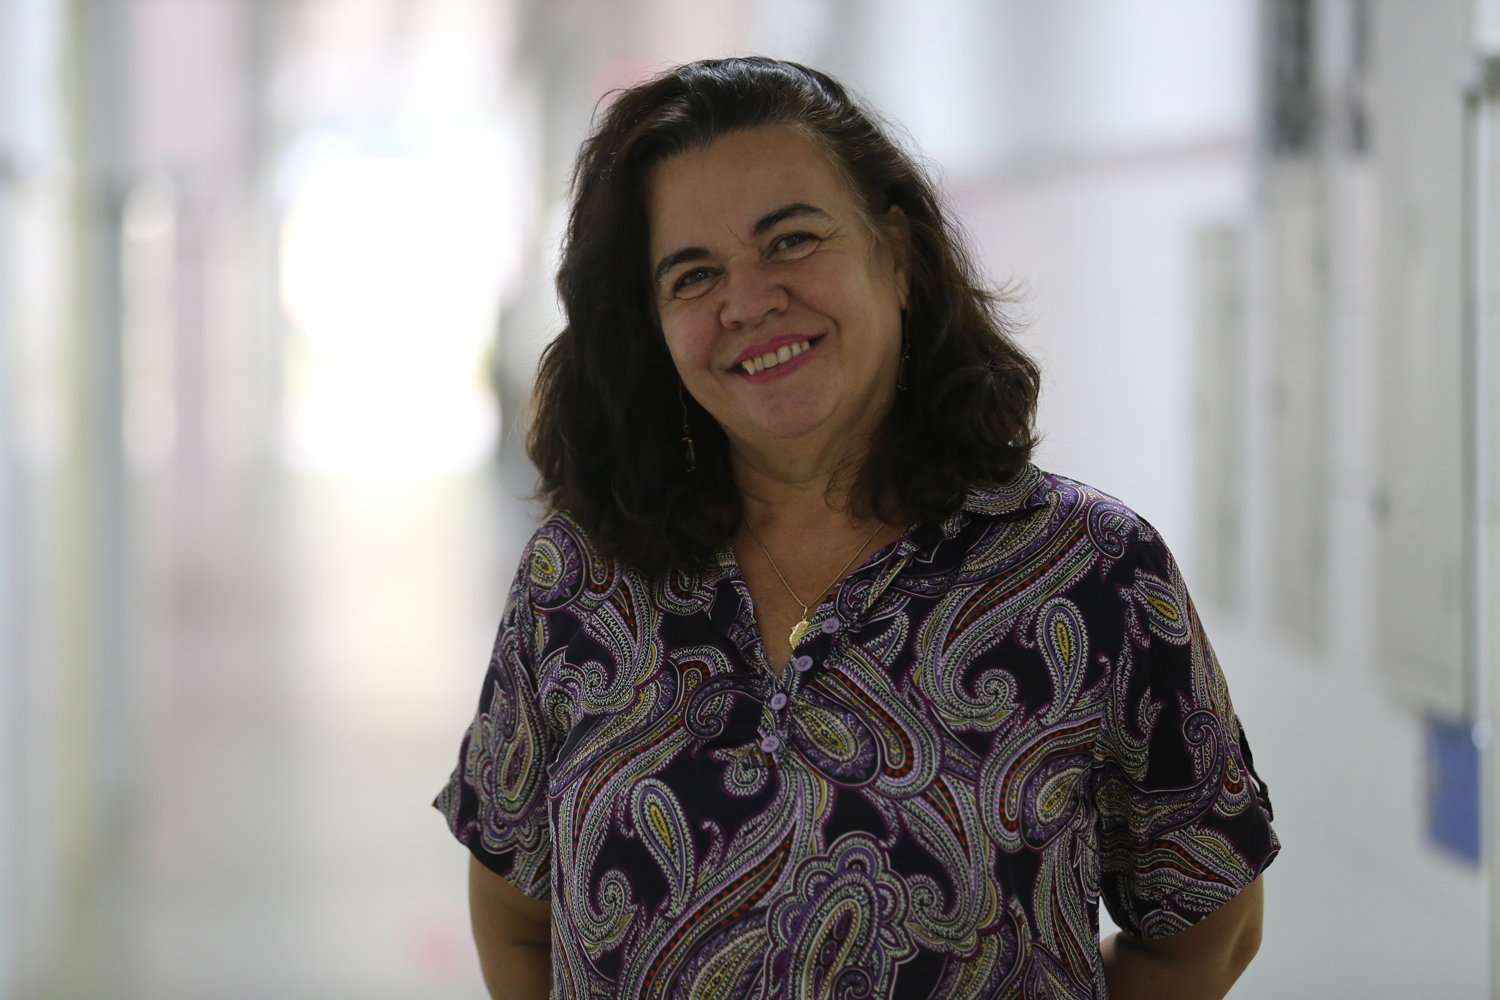 Para Vania Carvalho, a ideia era trazer temas relacionados a pesquisa na área de saúde, em específico sobre Serviço Social